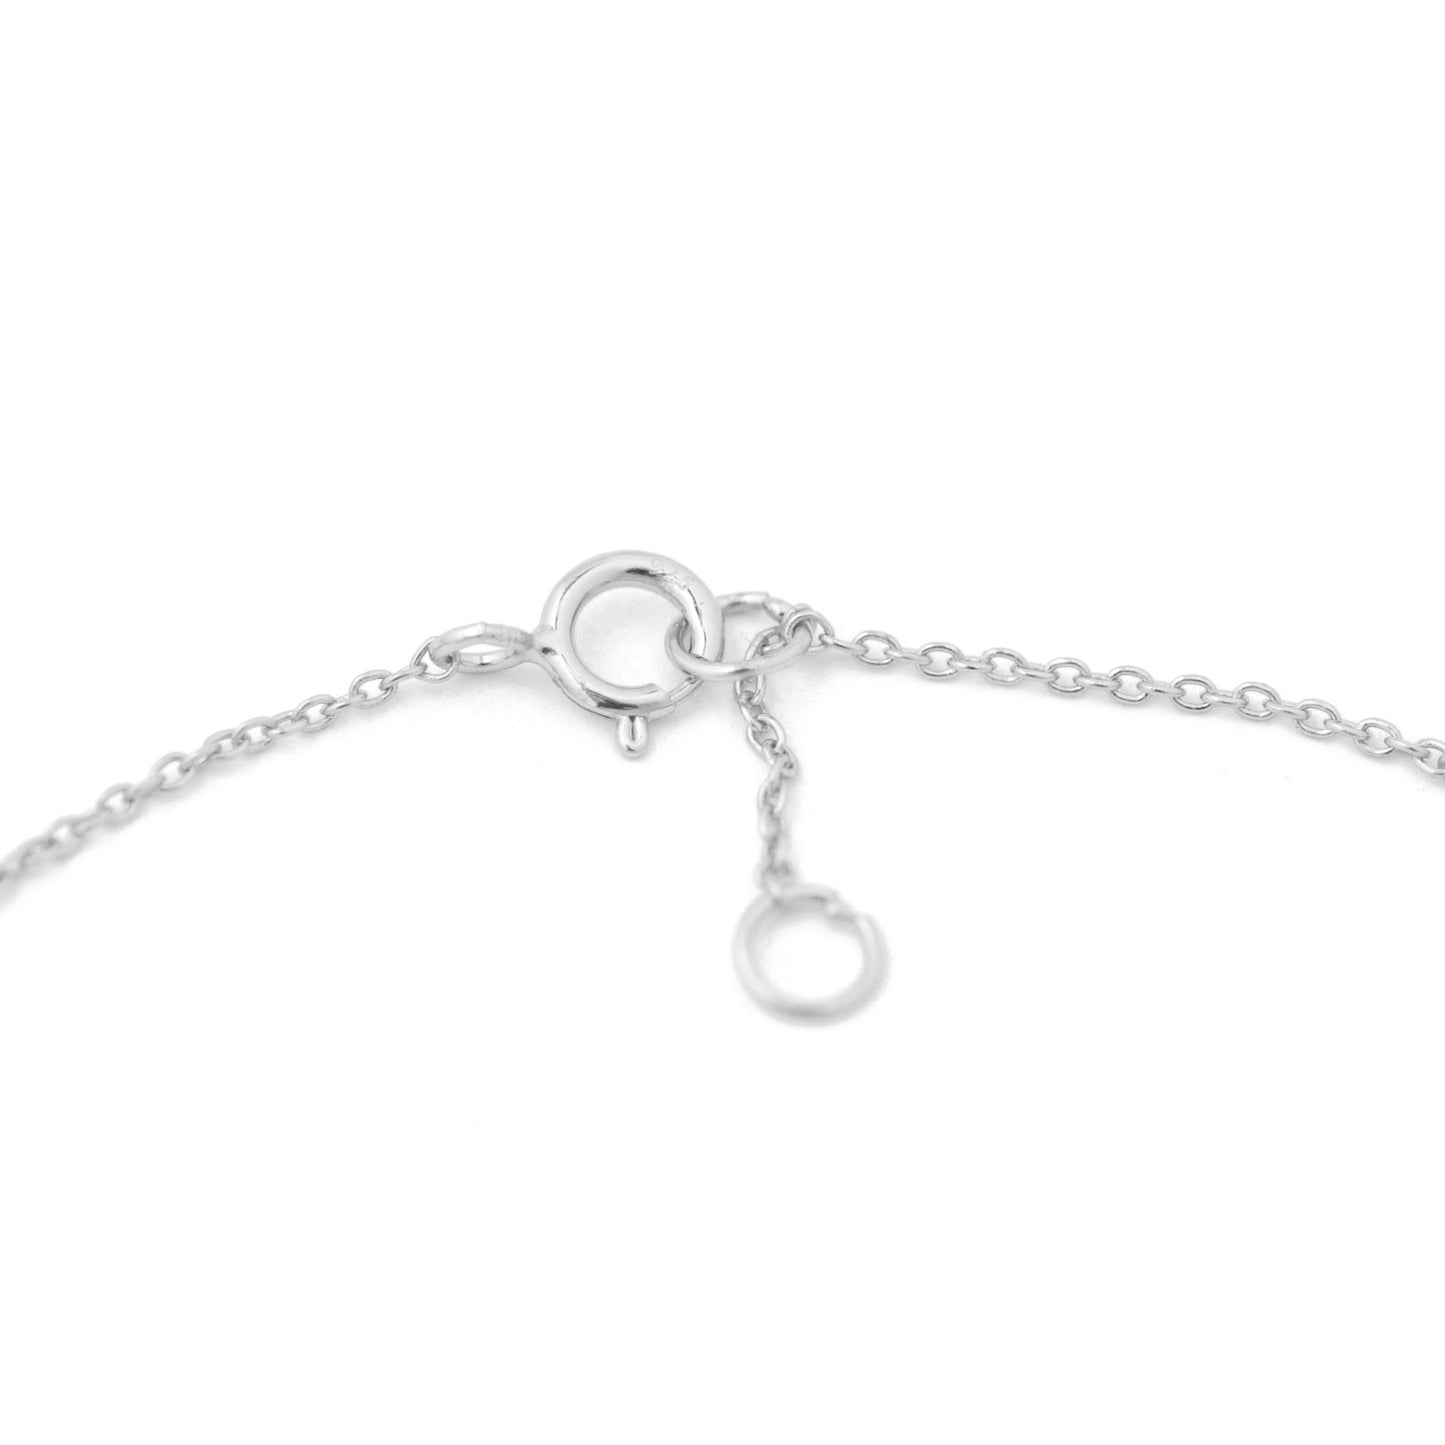 Zartes Armband / 925er Sterling Silber / 16-17 cm